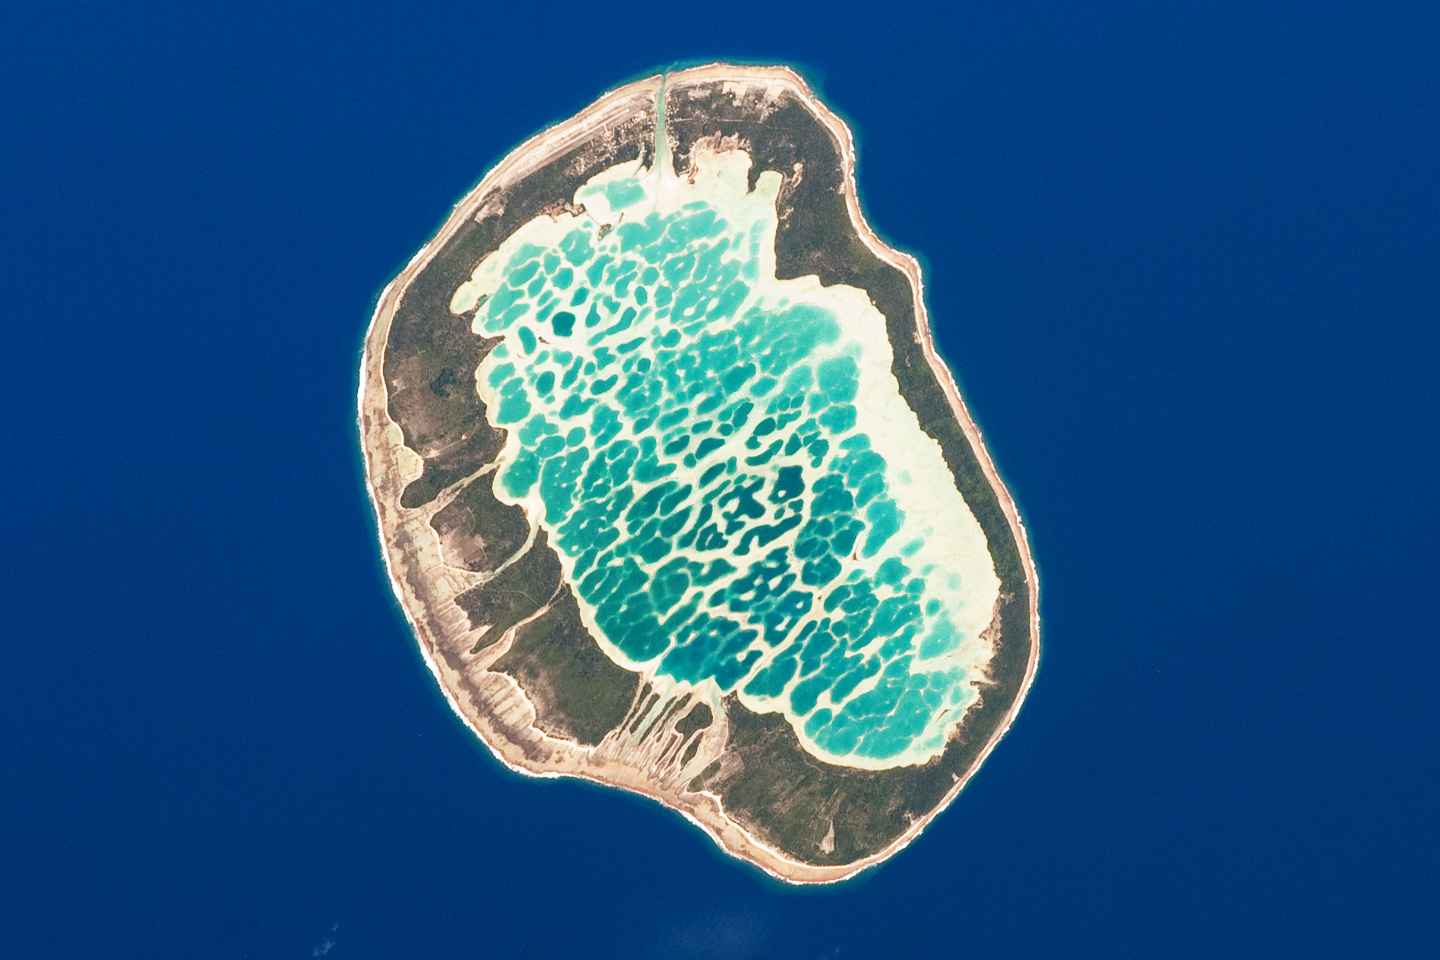 atoll des iles tuamotu en 7 lettres